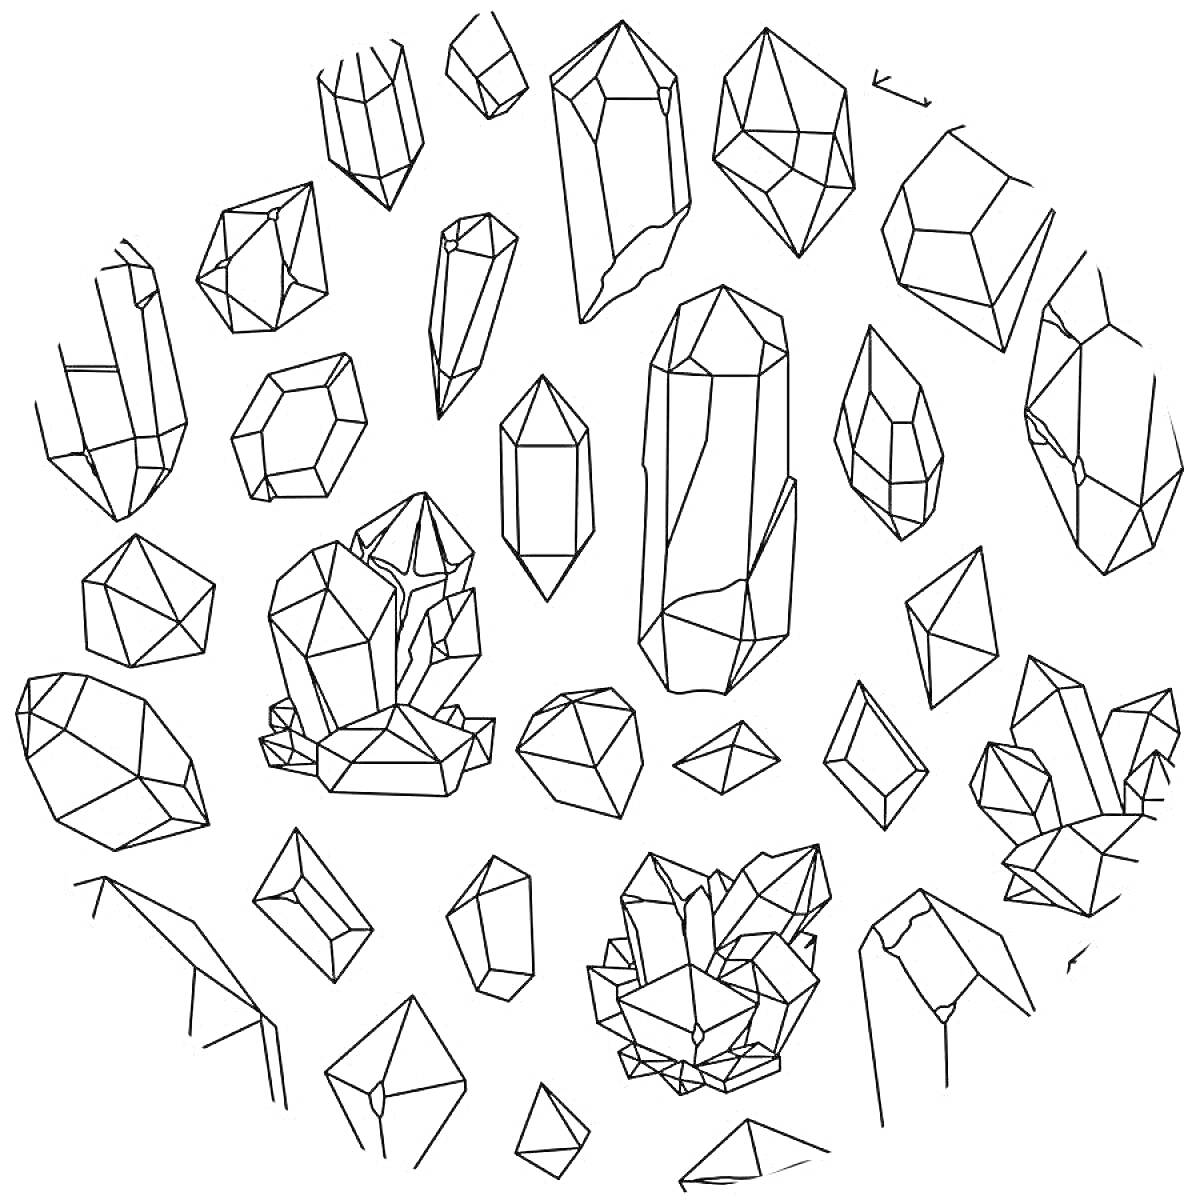 Раскраска Разнообразие кристаллов (различные формы и размеры кристаллов, расположенные по кругу)